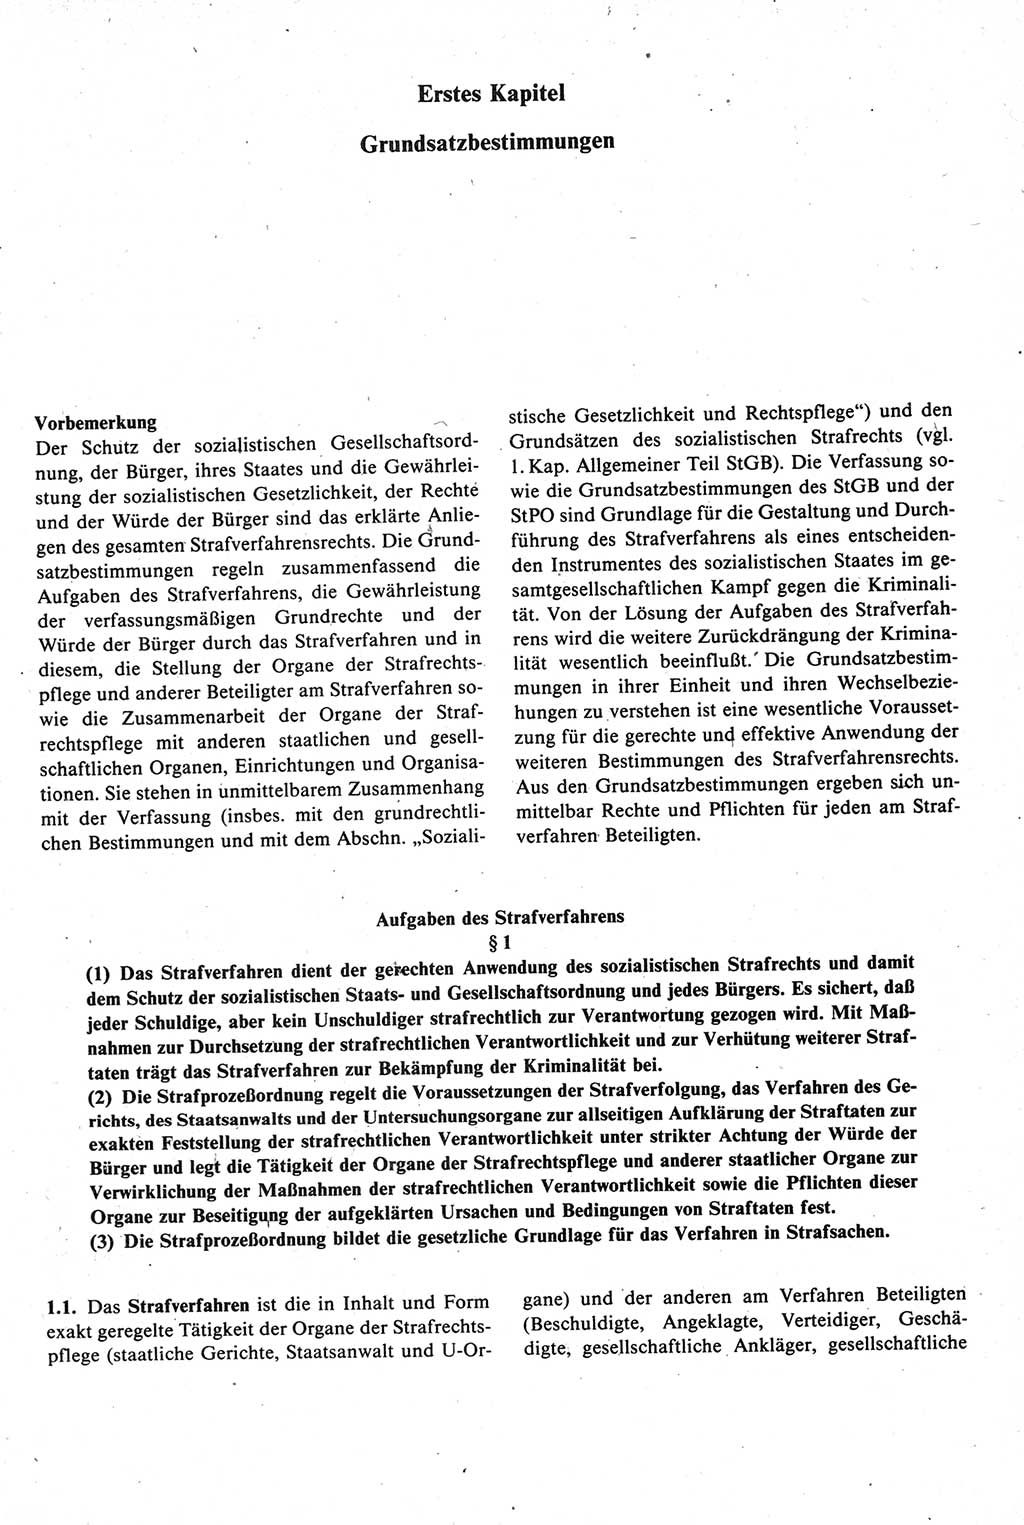 Strafprozeßrecht der DDR [Deutsche Demokratische Republik], Kommentar zur Strafprozeßordnung (StPO) 1987, Seite 19 (Strafprozeßr. DDR Komm. StPO 1987, S. 19)